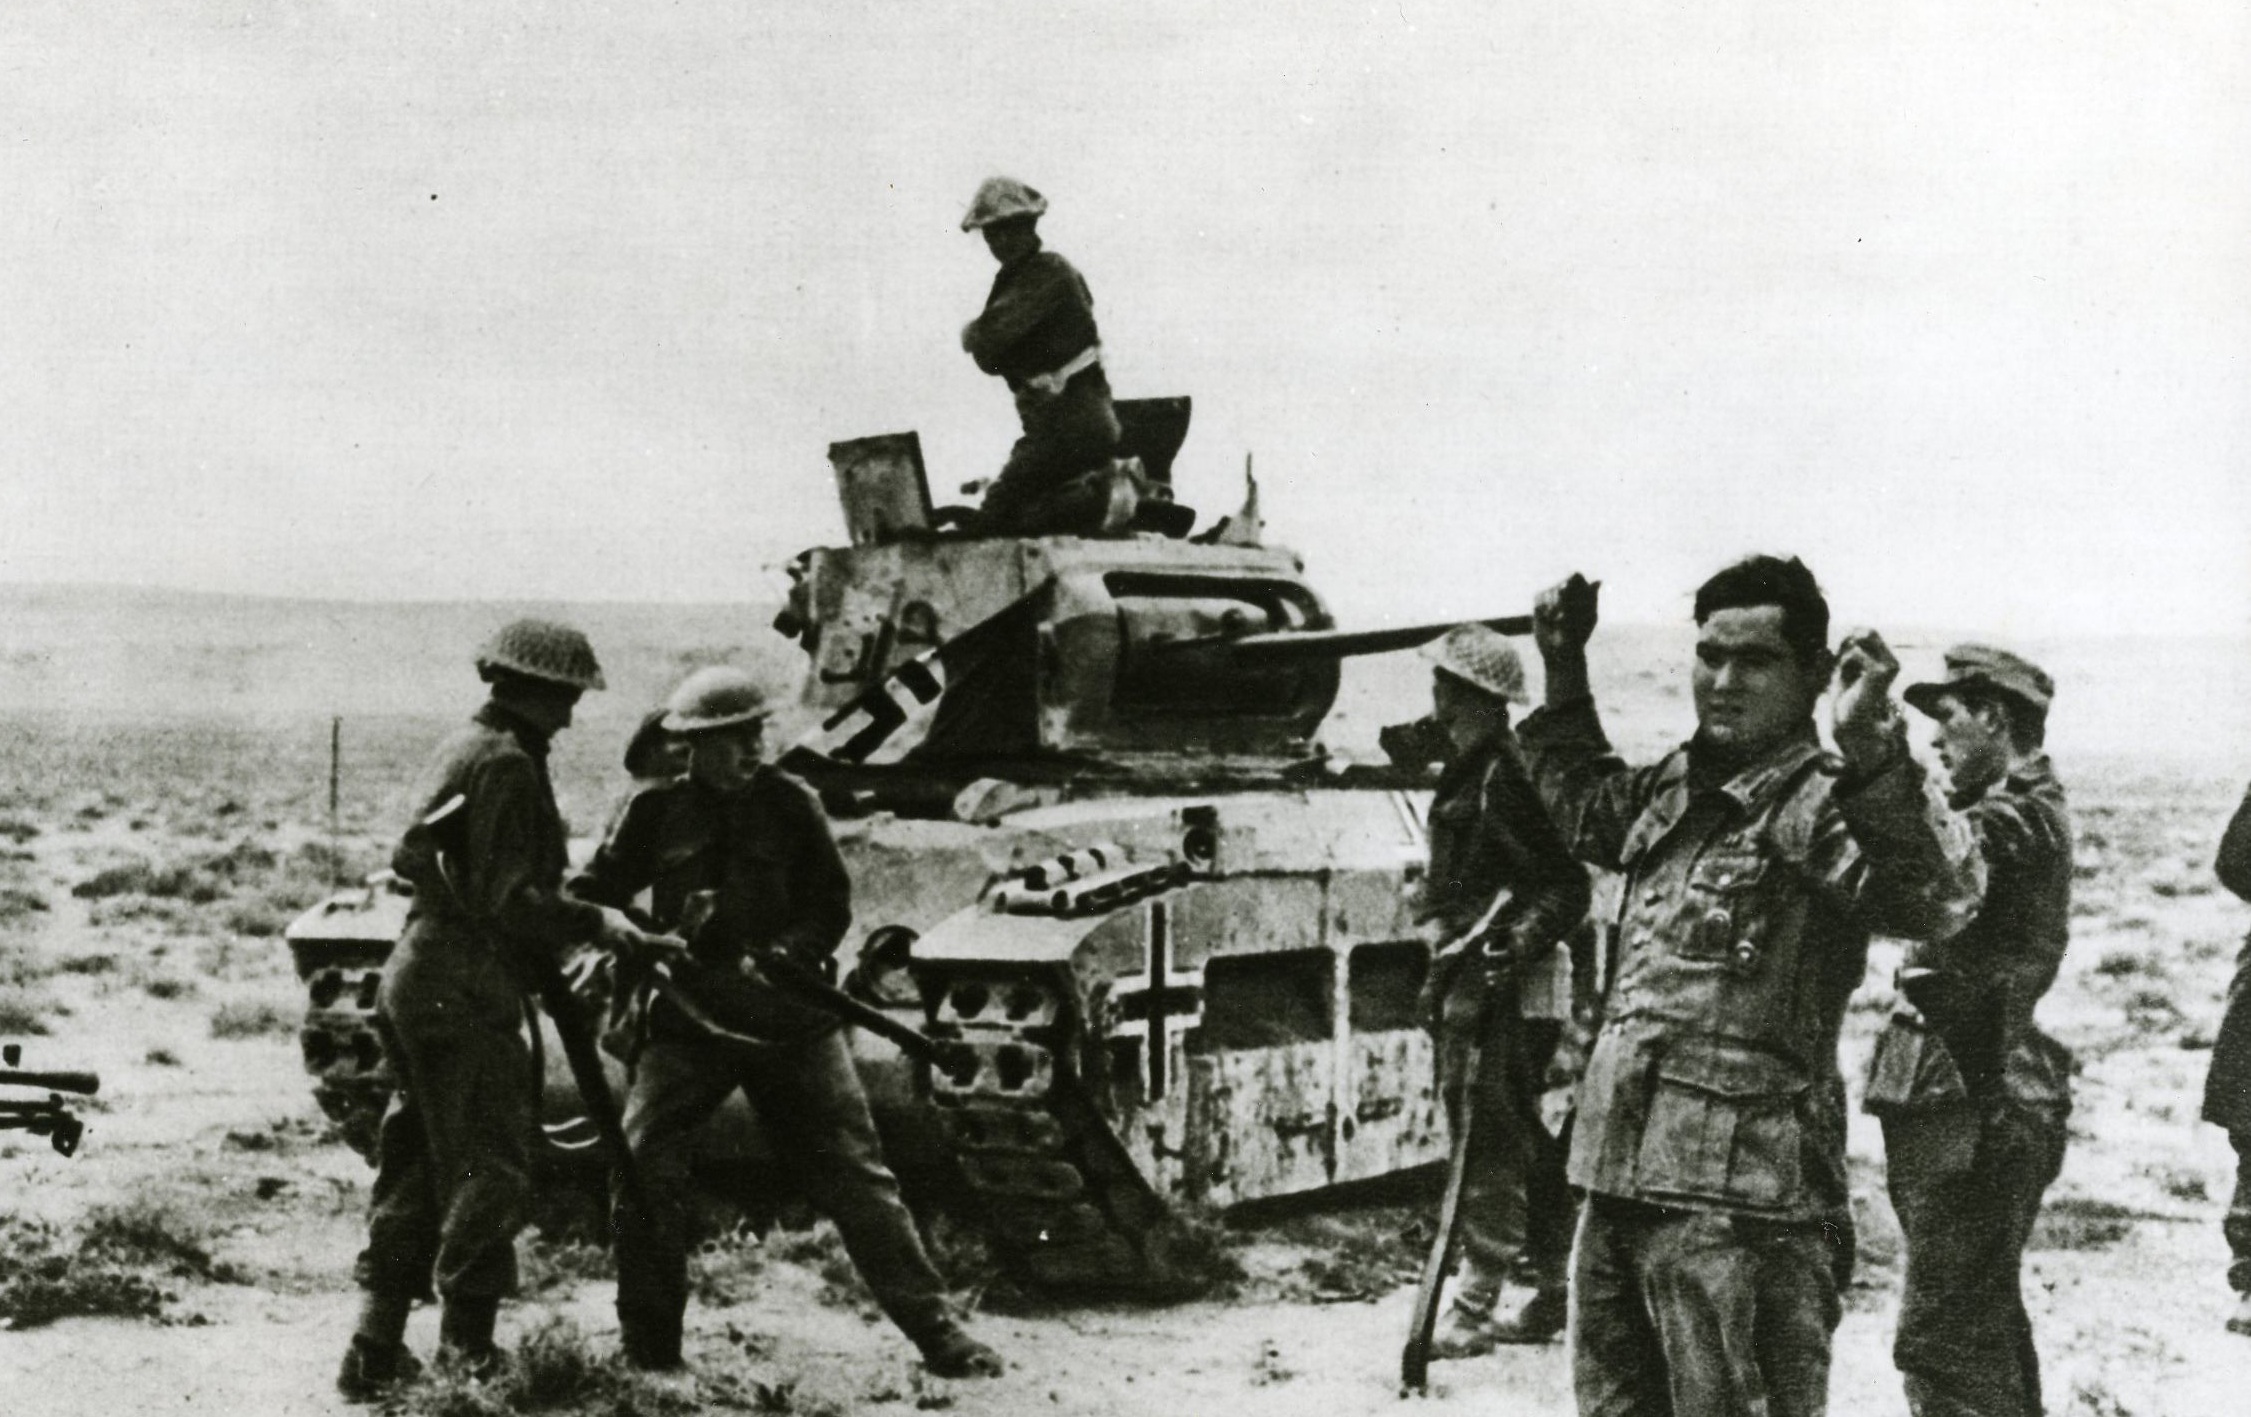 Lemo Kapitel Der Zweite Weltkrieg Kriegsverlauf Schlacht Bei El Alamein 1942